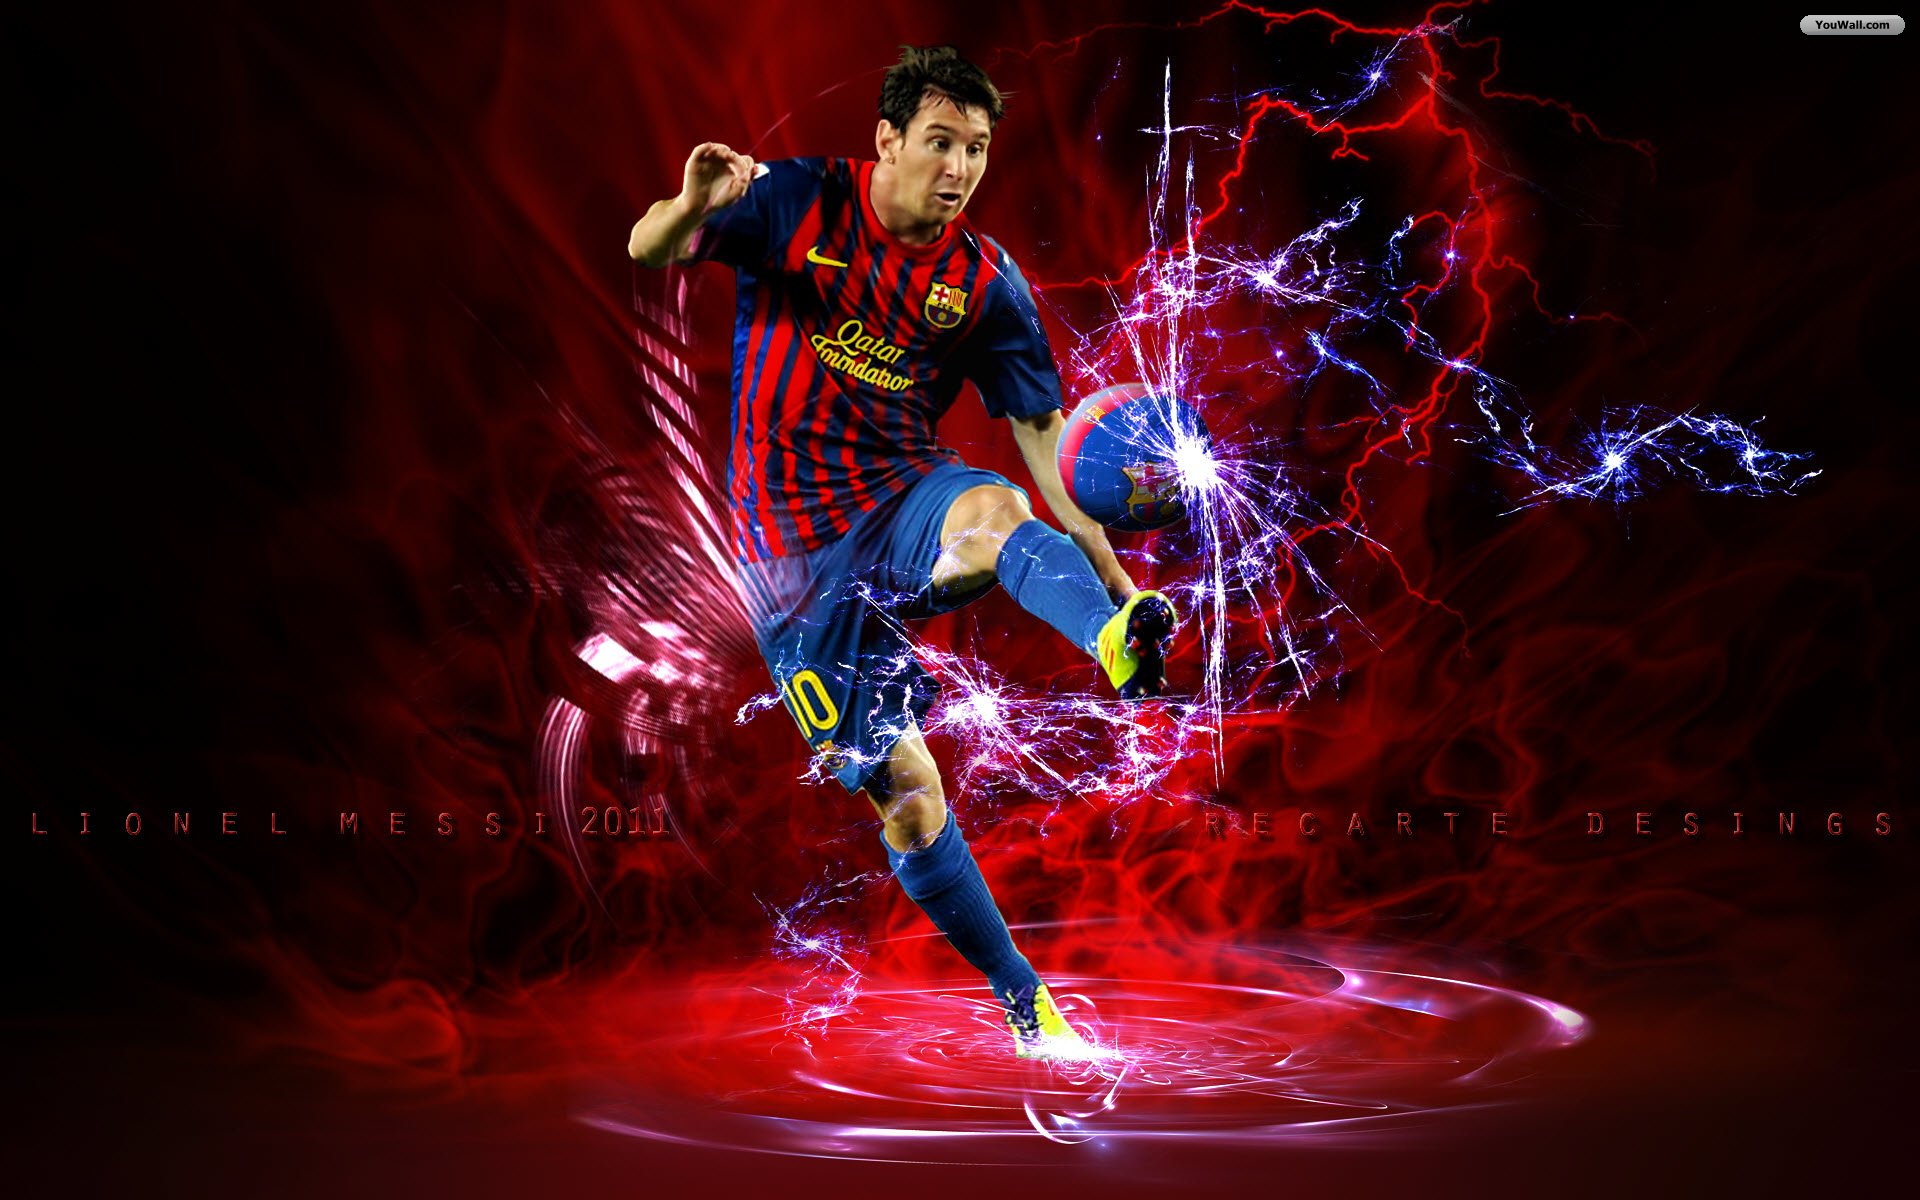 48+] Cool Wallpapers of Messi - WallpaperSafari